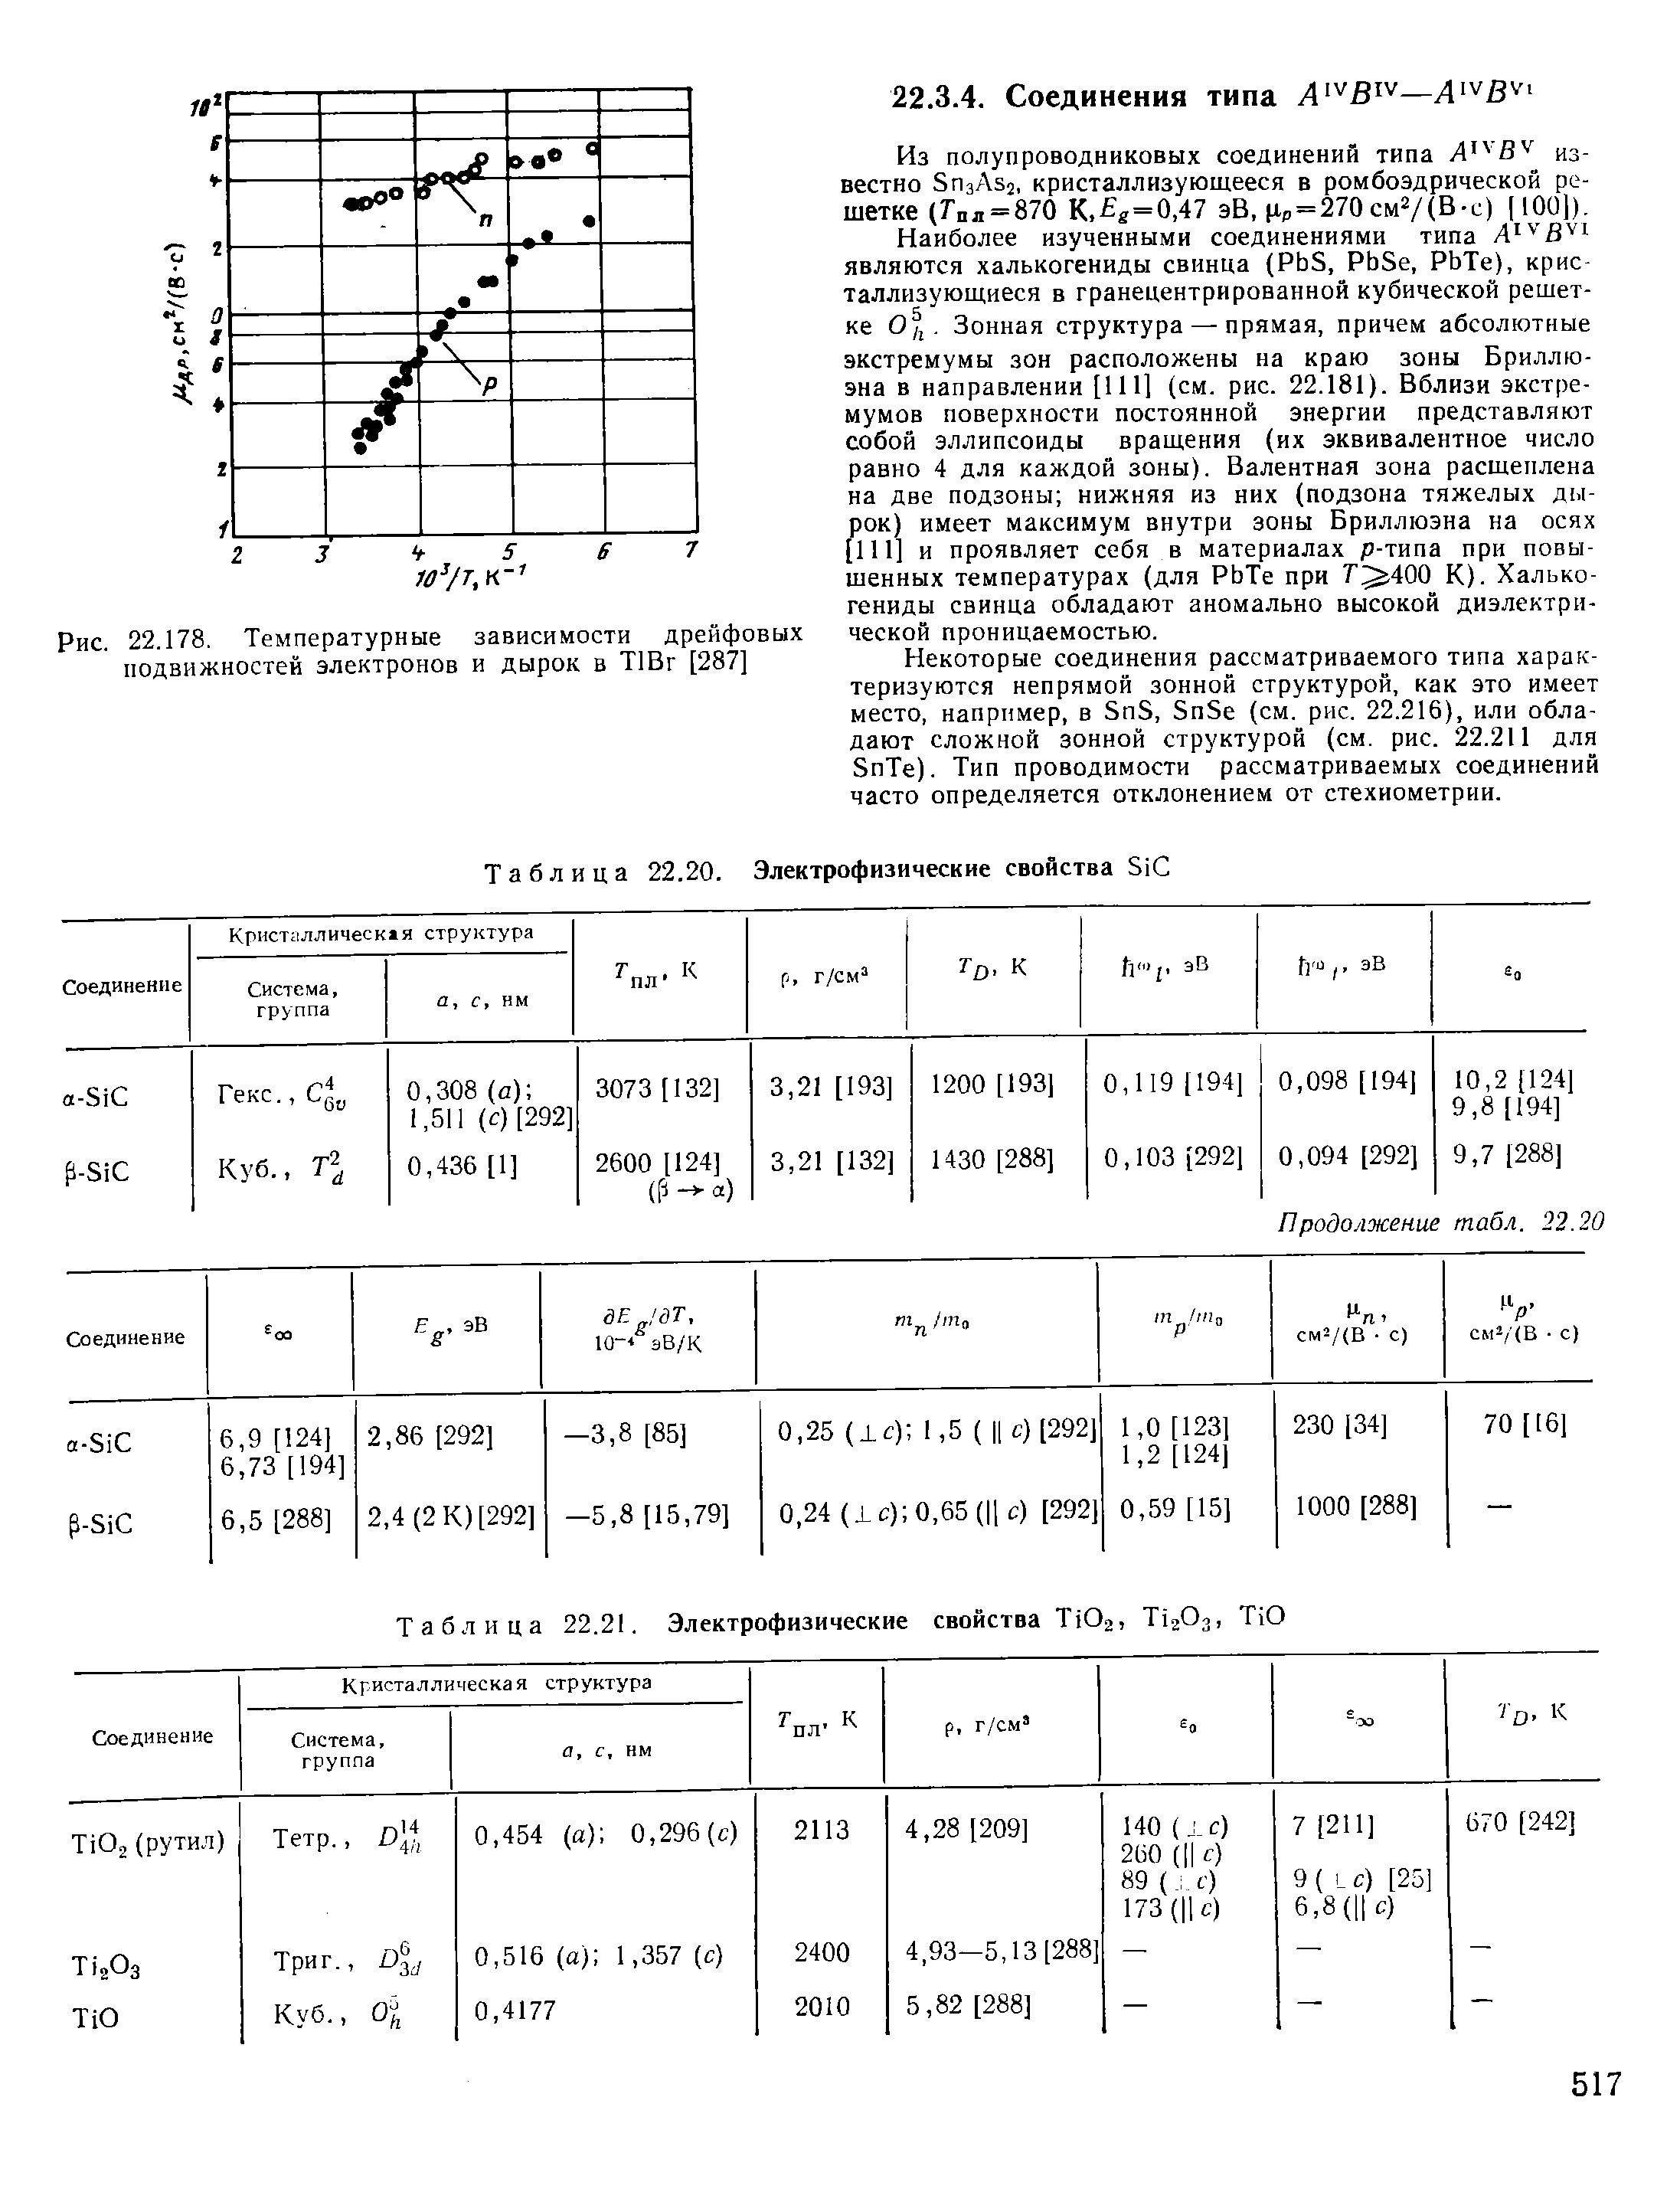 Таблица 22.20. Электрофизические свойства Si 
